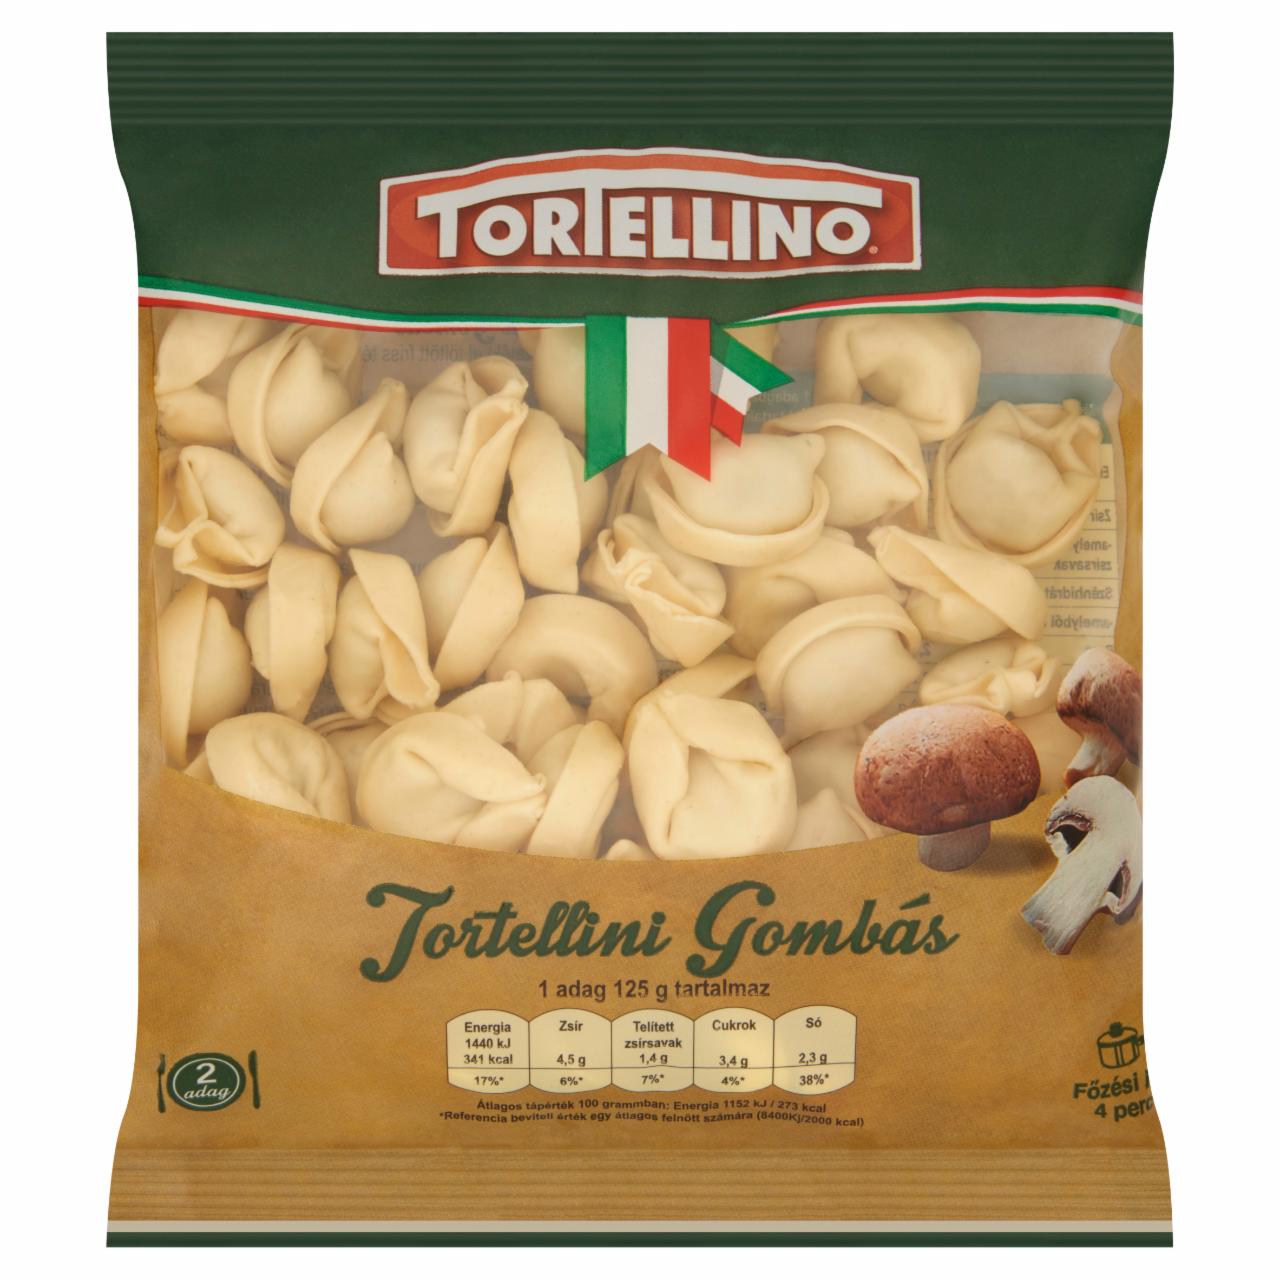 Képek - Tortellino Tortellini gombás töltelékkel töltött friss tészta 250 g